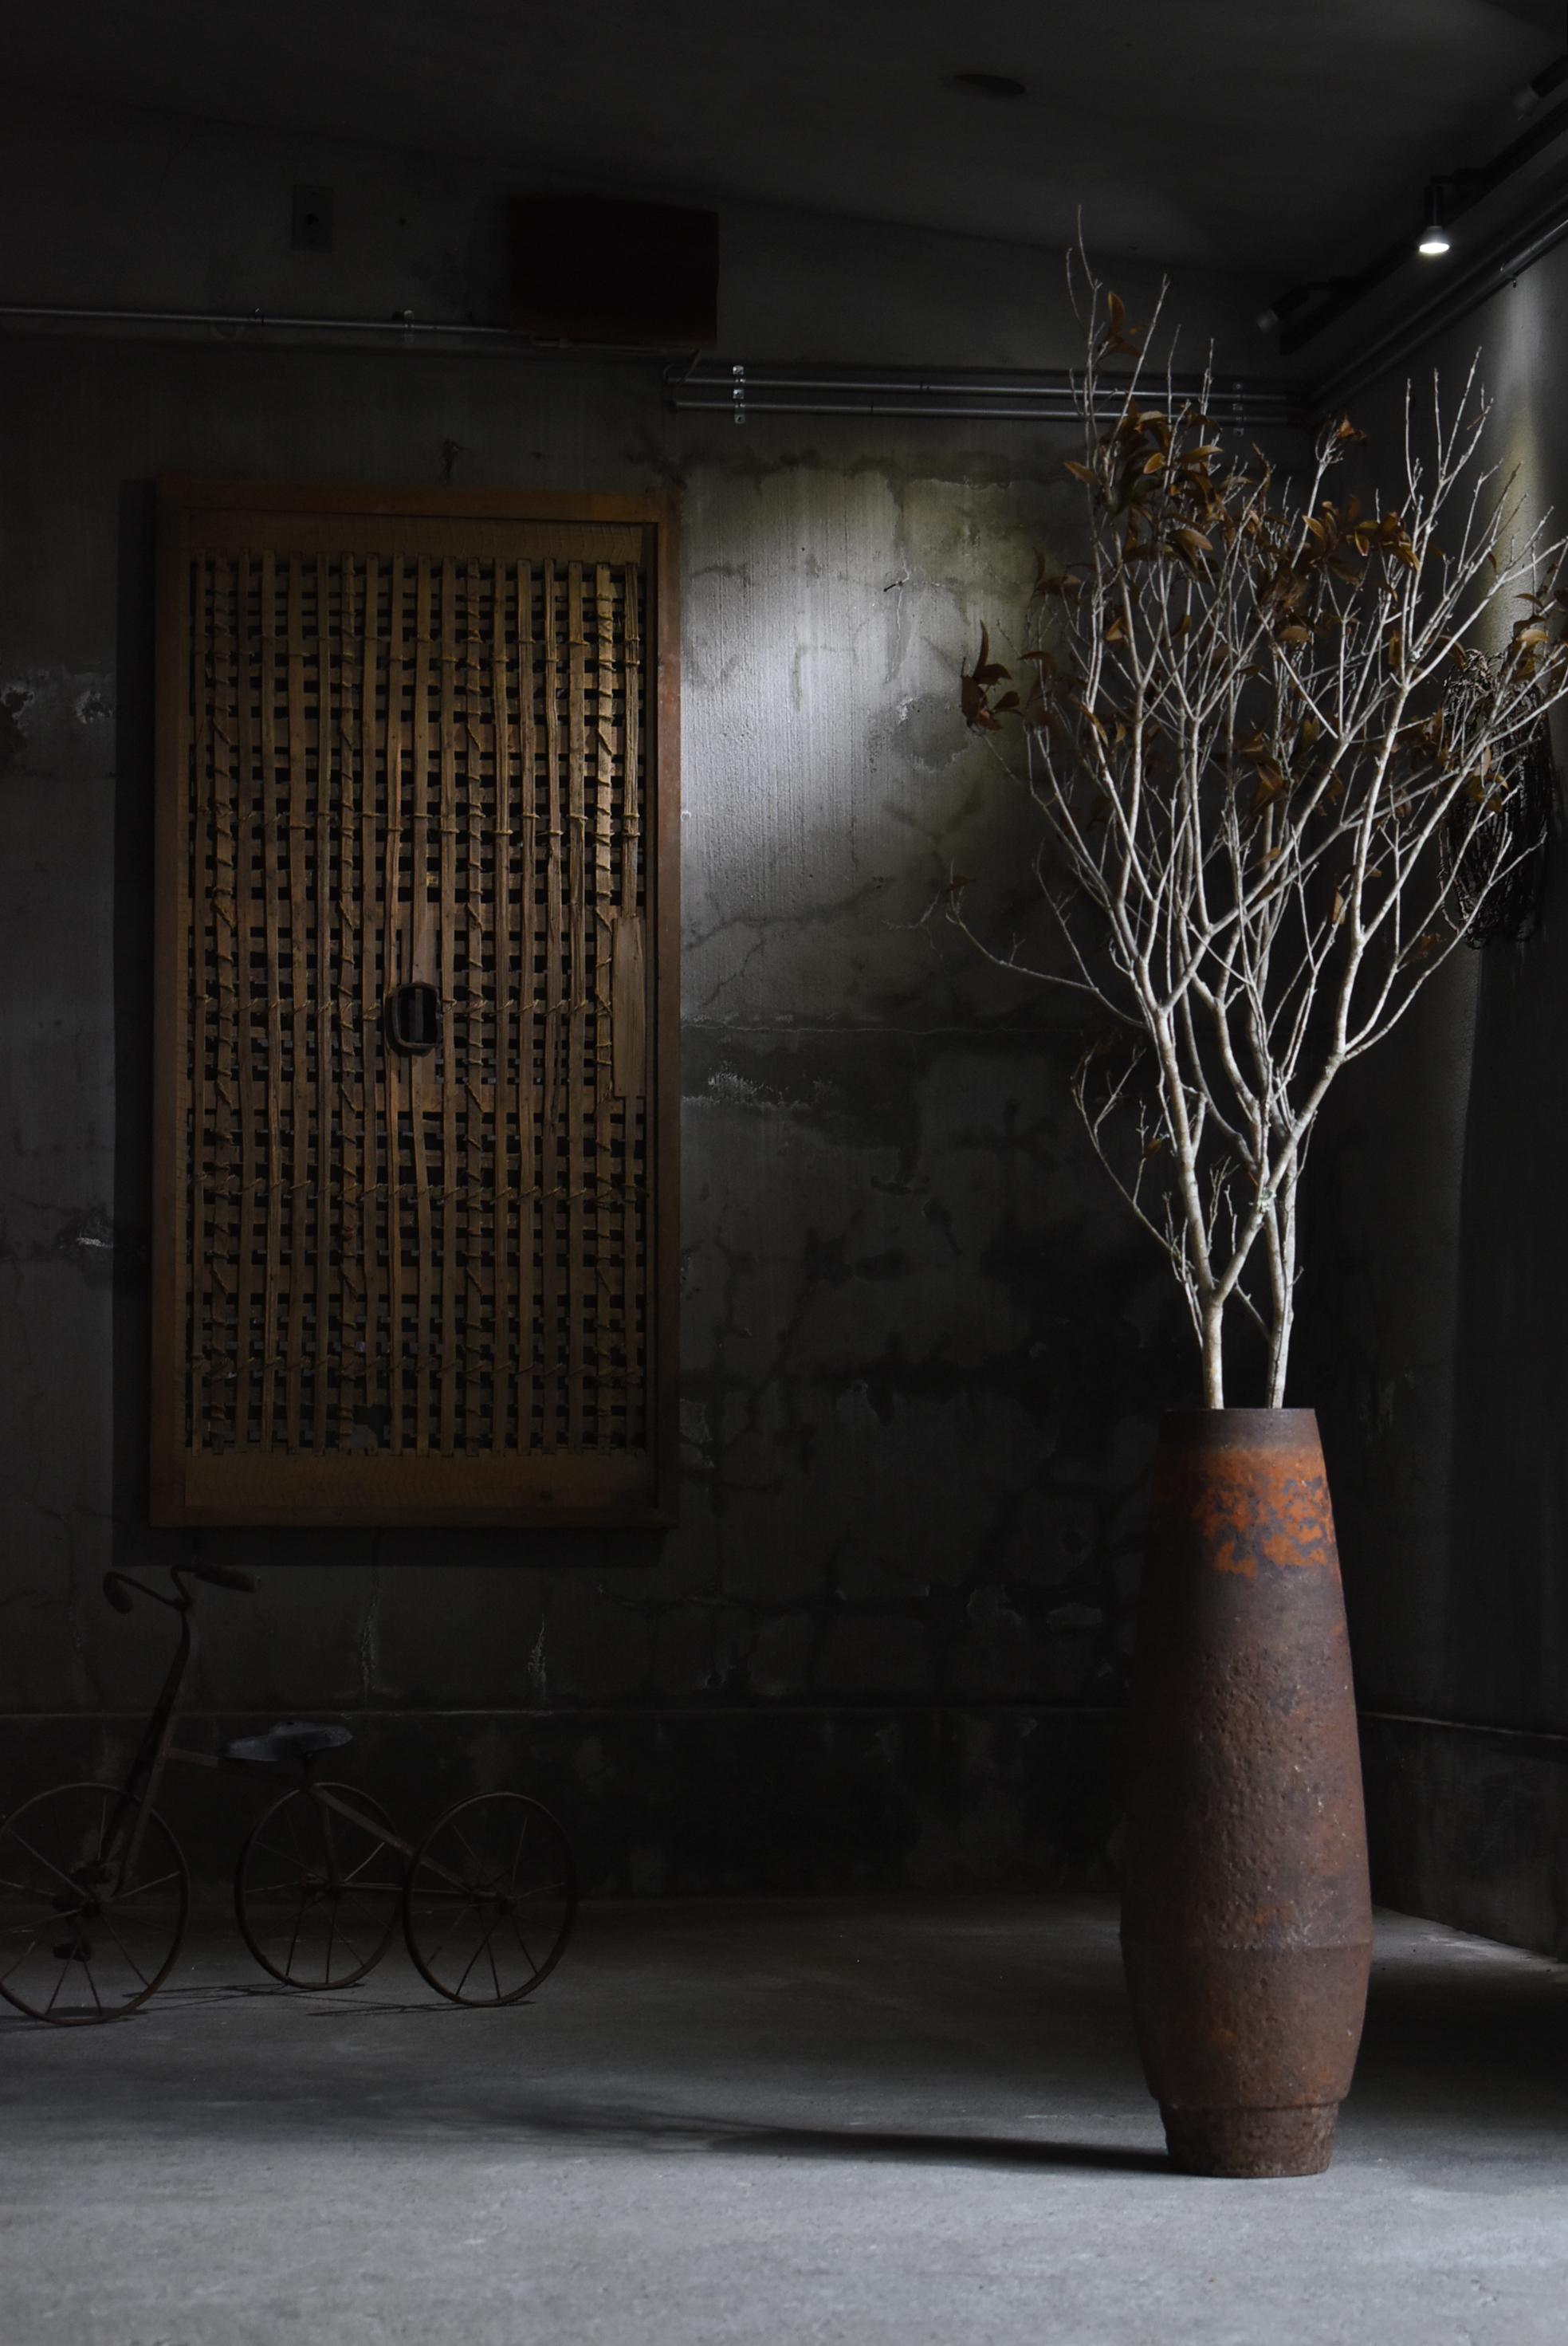 Dies ist eine Tür, die in einem sehr alten japanischen Lagerhaus verwendet wurde.
Diese Tür wurde in der Meiji-Ära hergestellt. (1860er-1900er Jahre).
Der Holzrahmen ist aus Zedernholz gefertigt und hat in der Mitte einen Eisengriff.

Die Tür